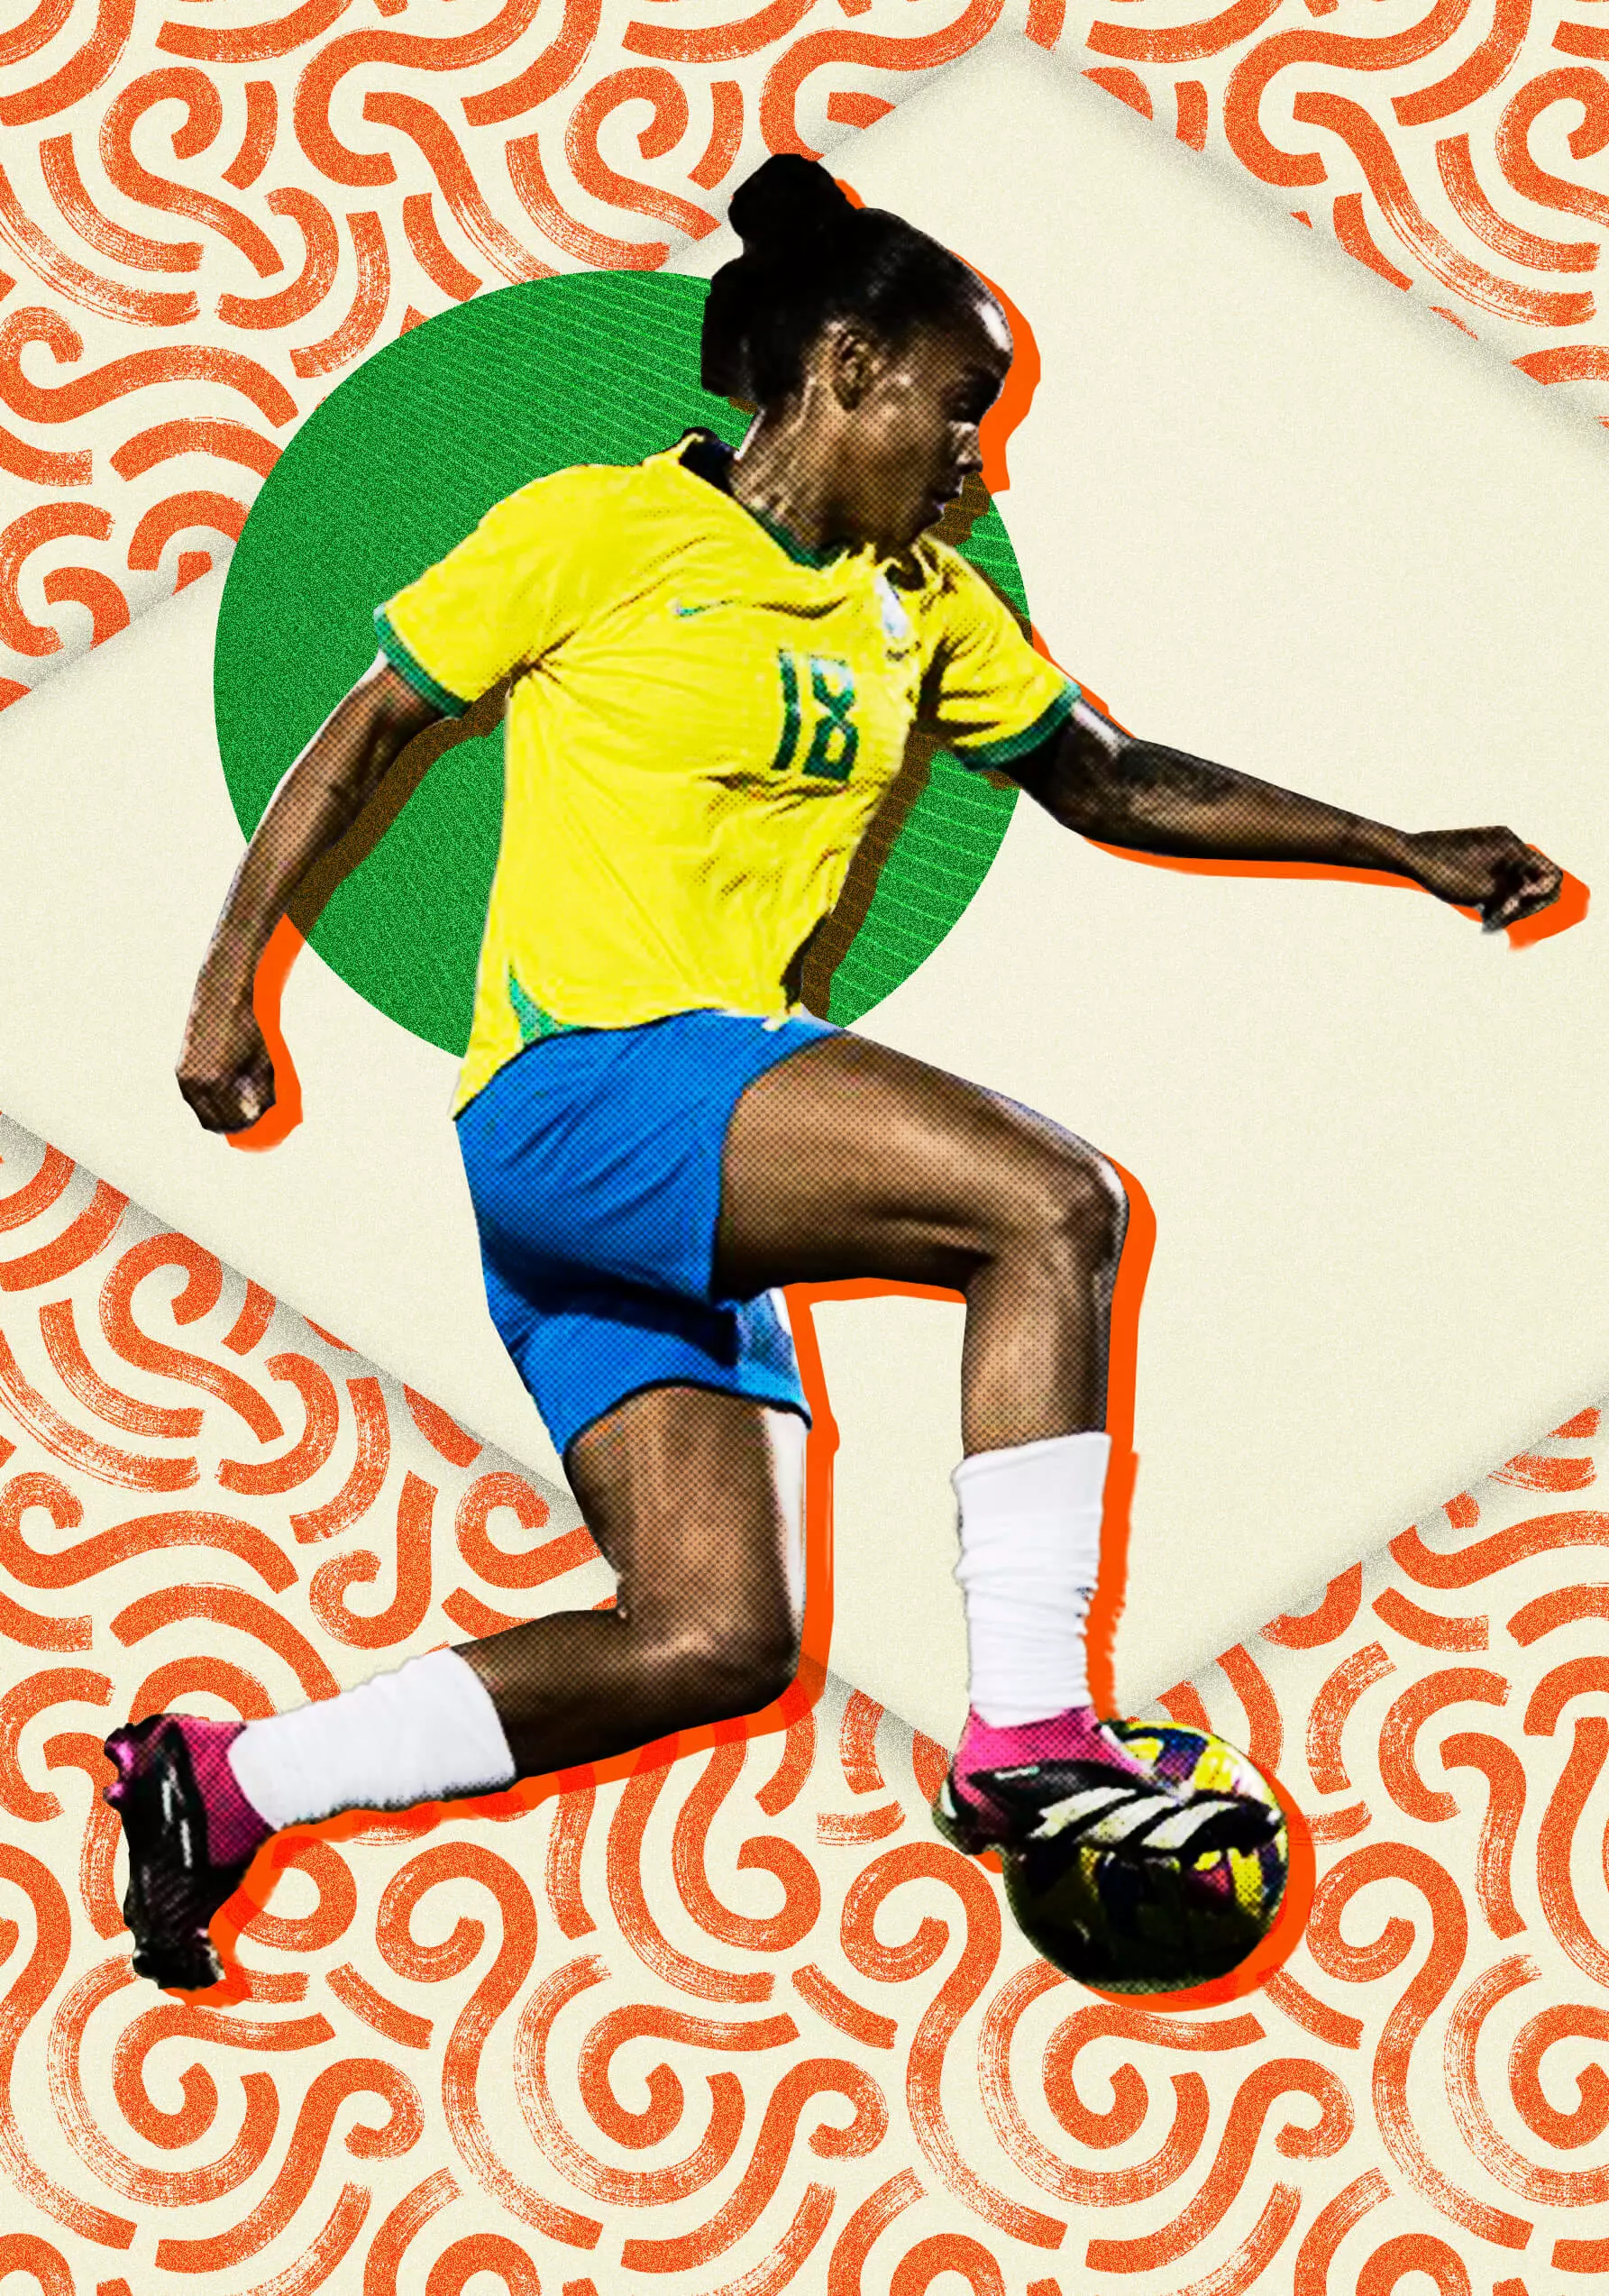 Chega de saudade: Copa do Mundo feminina acontece em julho de 2023